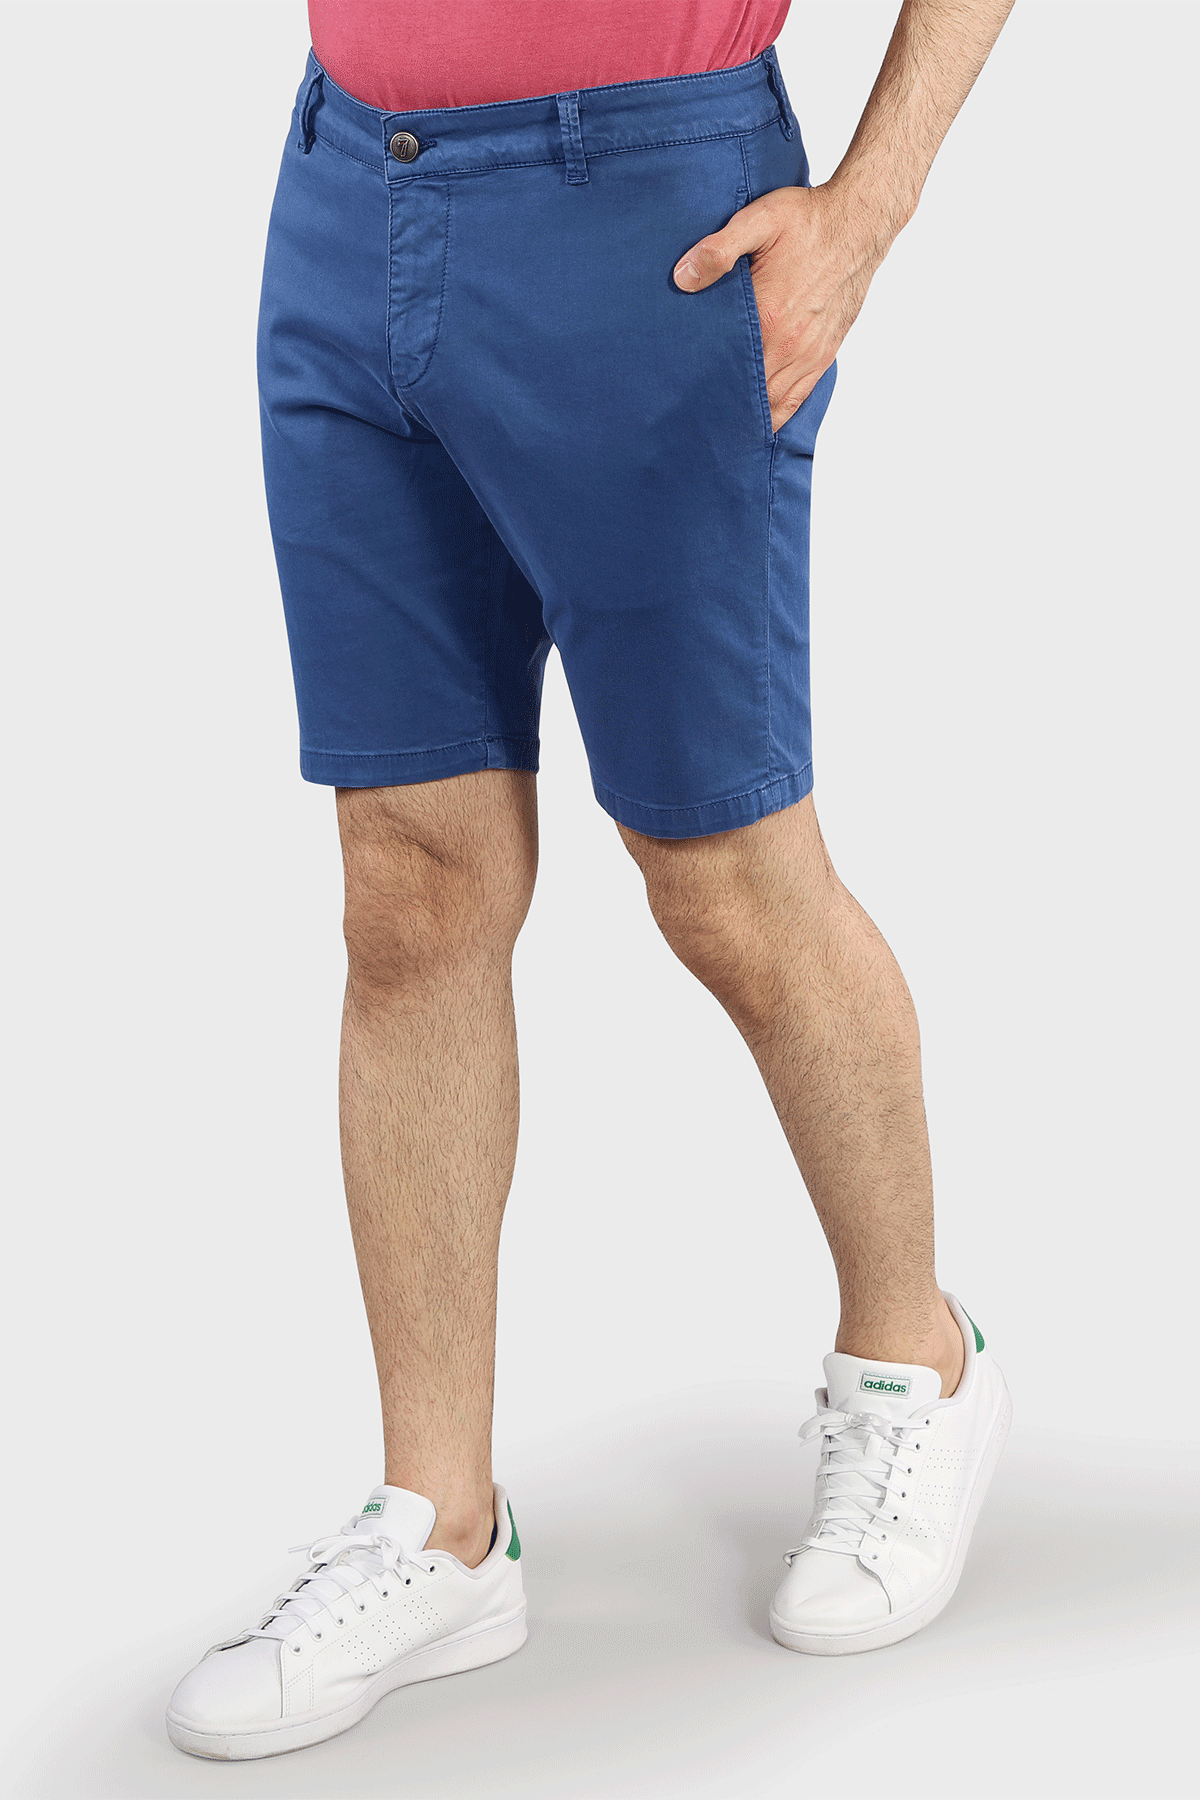 Navy Shorts - 7 Downie St.®